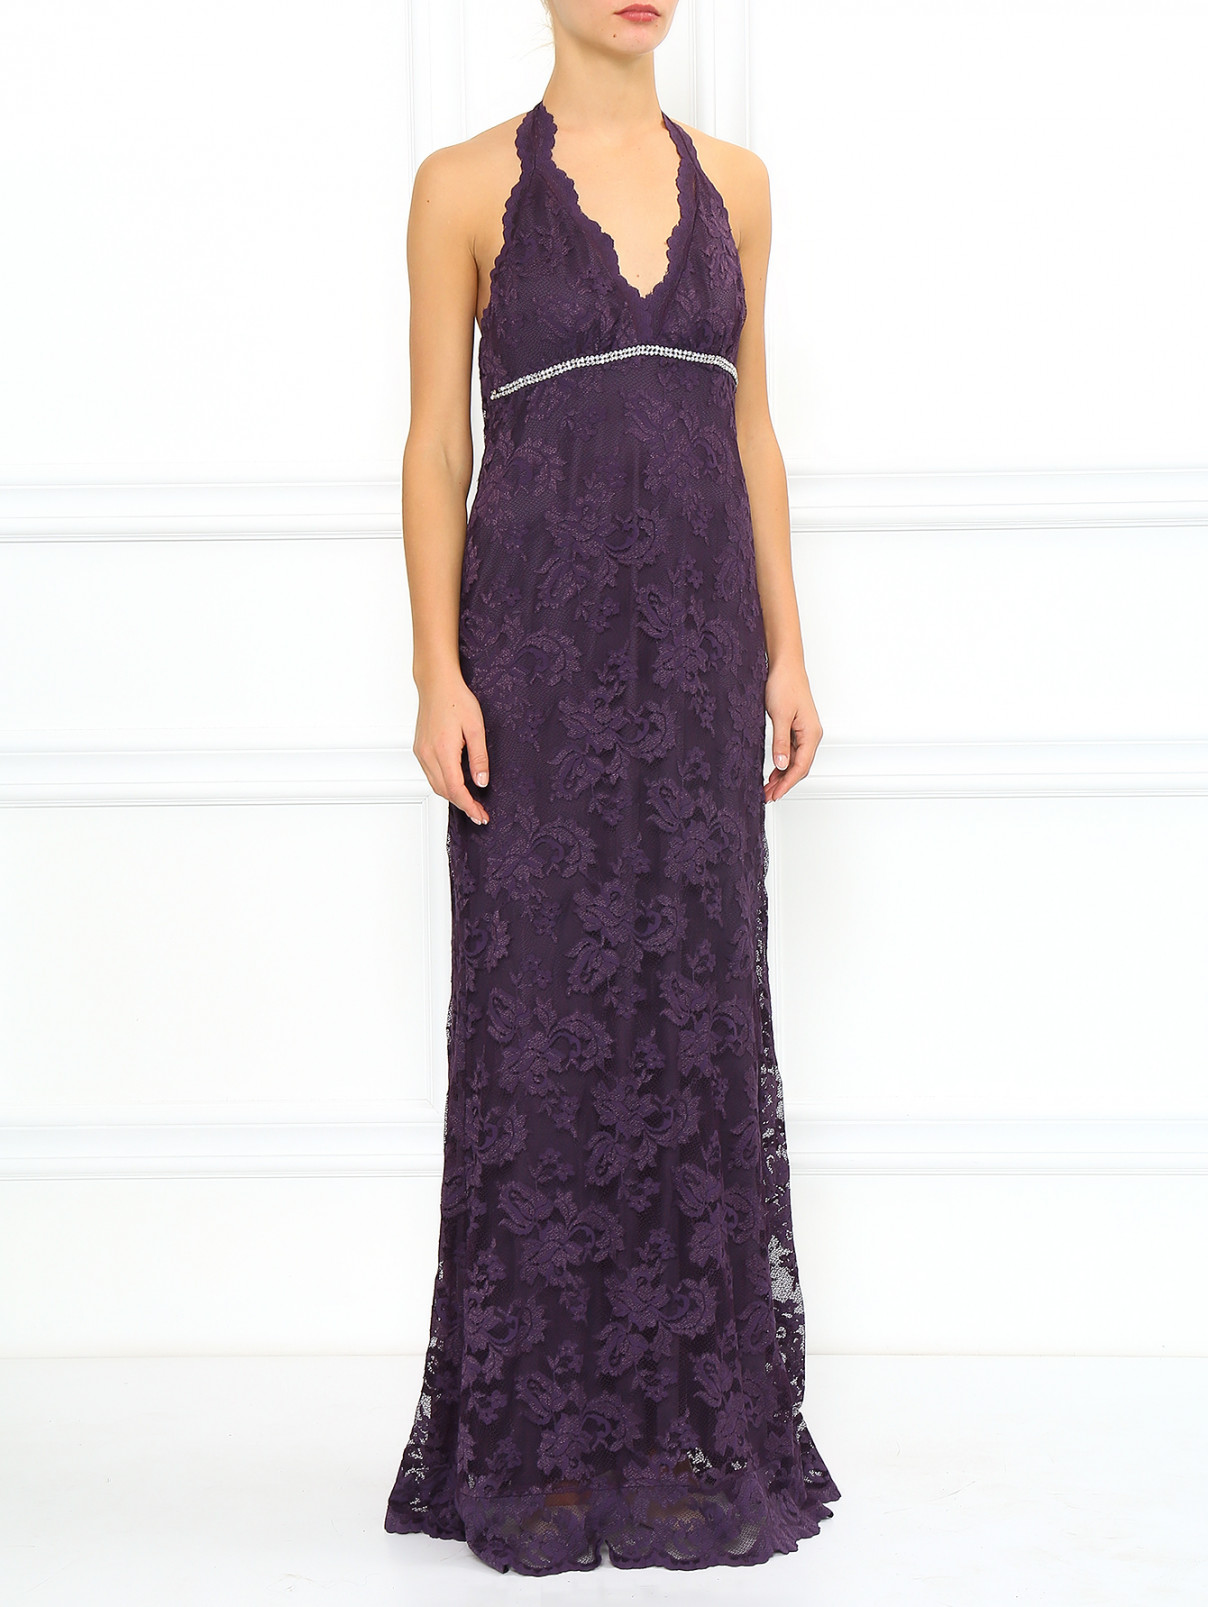 Платье_макси из гипюра декорированное стразами Olvi's  –  Модель Общий вид  – Цвет:  Фиолетовый